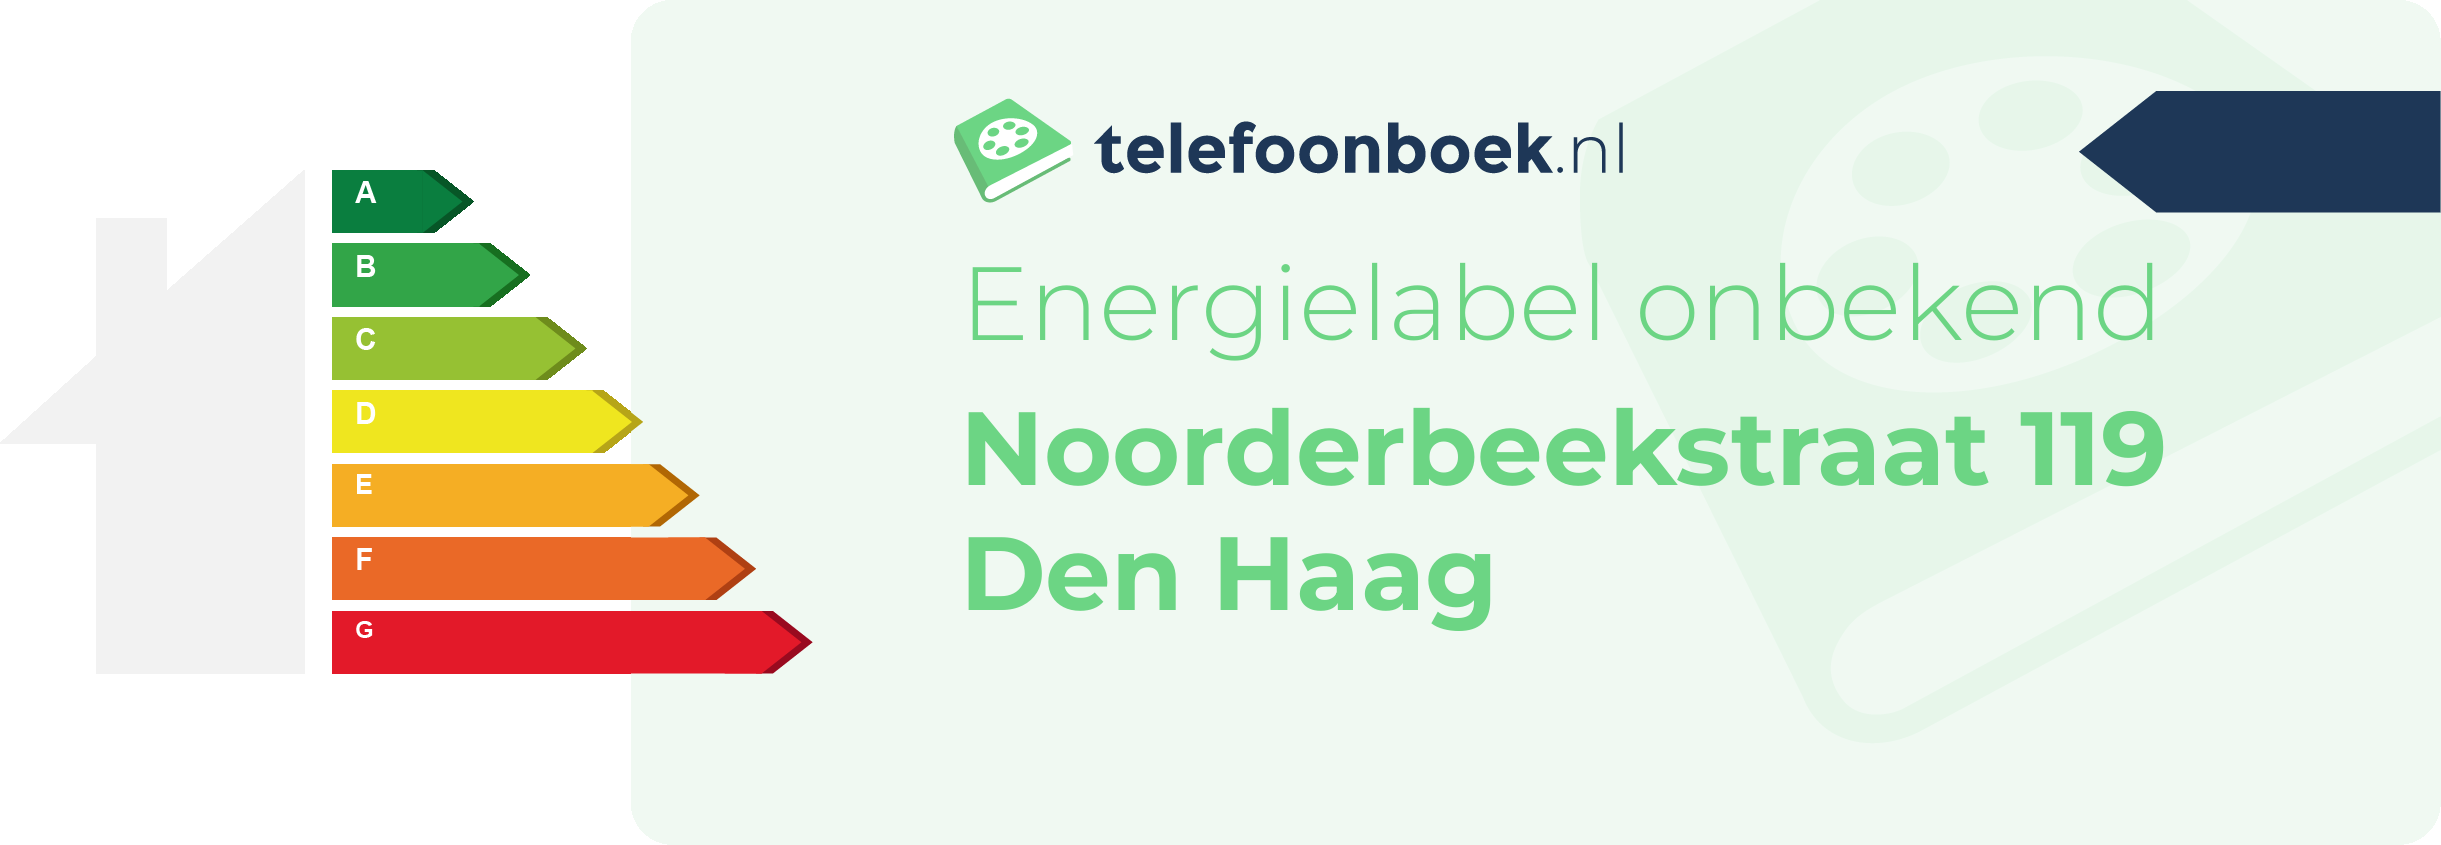 Energielabel Noorderbeekstraat 119 Den Haag